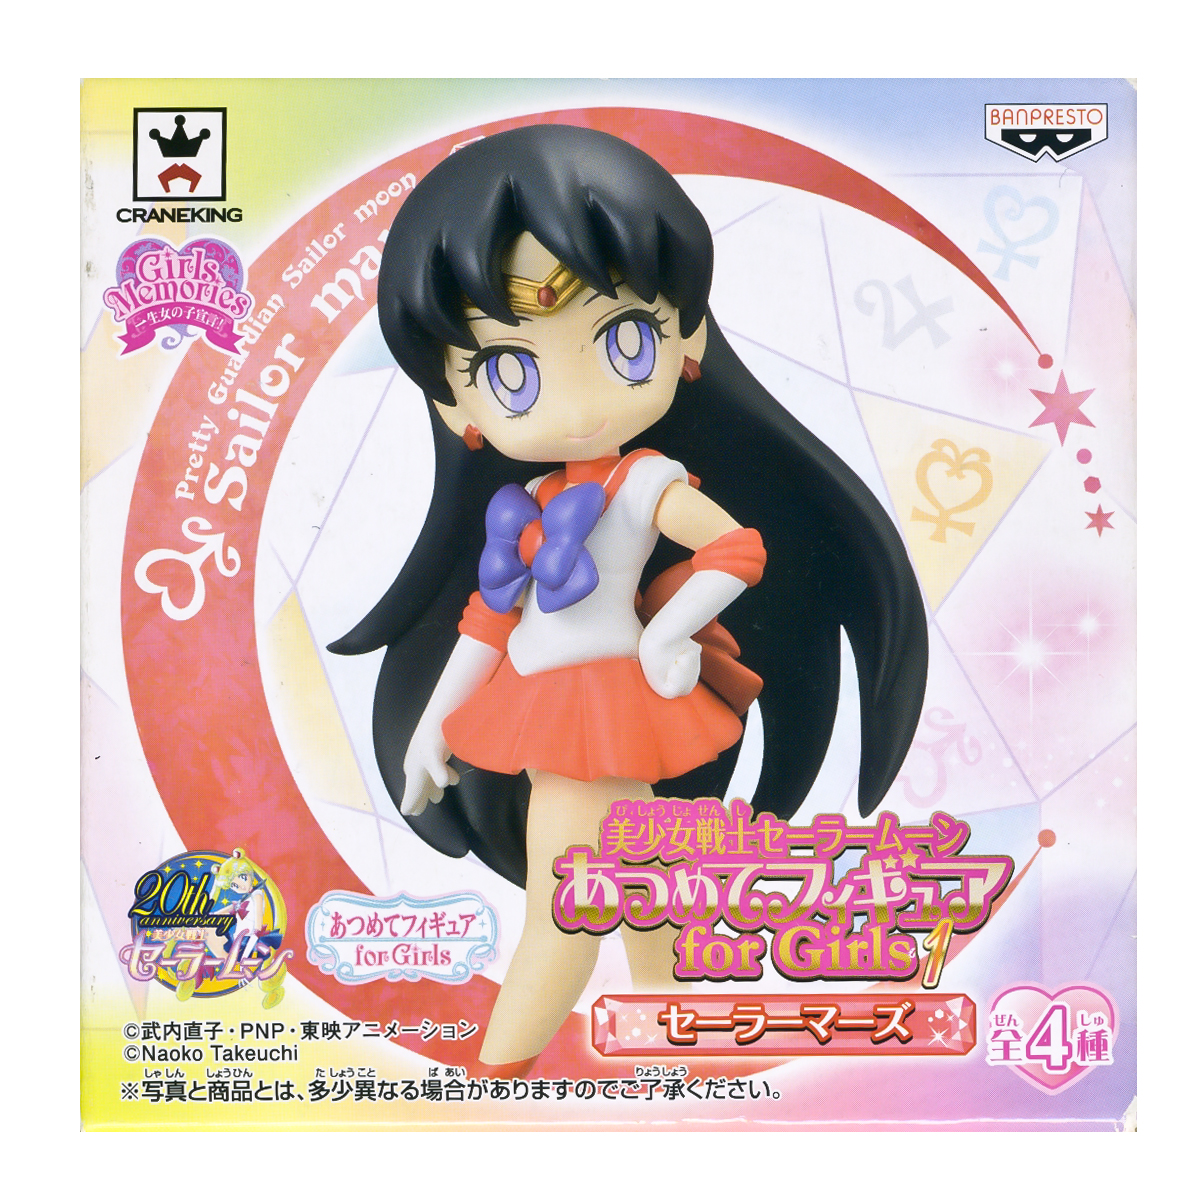 Sailor Mars Atsumete Trading Figure Banpresto Anime Statue Doll 20th Anniversary Special